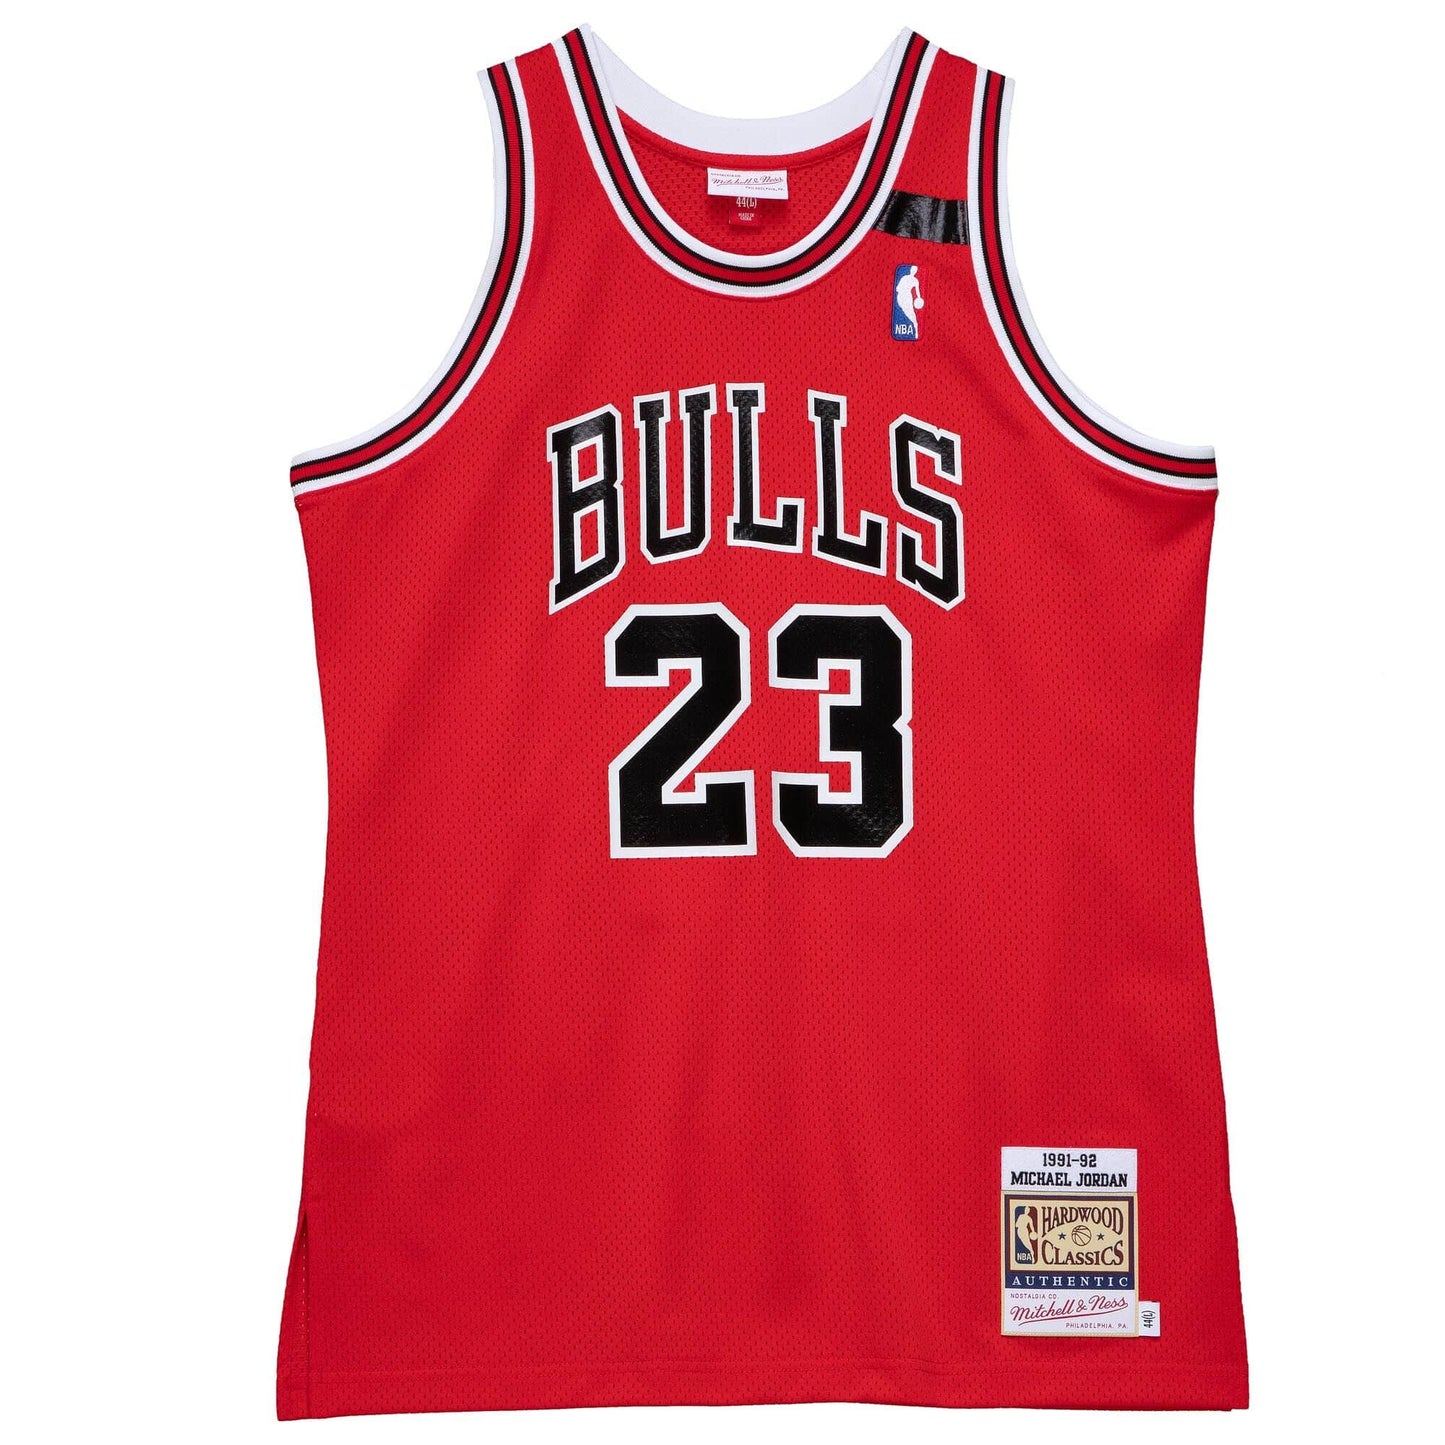 Authentic Michael Jordans Chicago Bulls 1991-92 Jersey